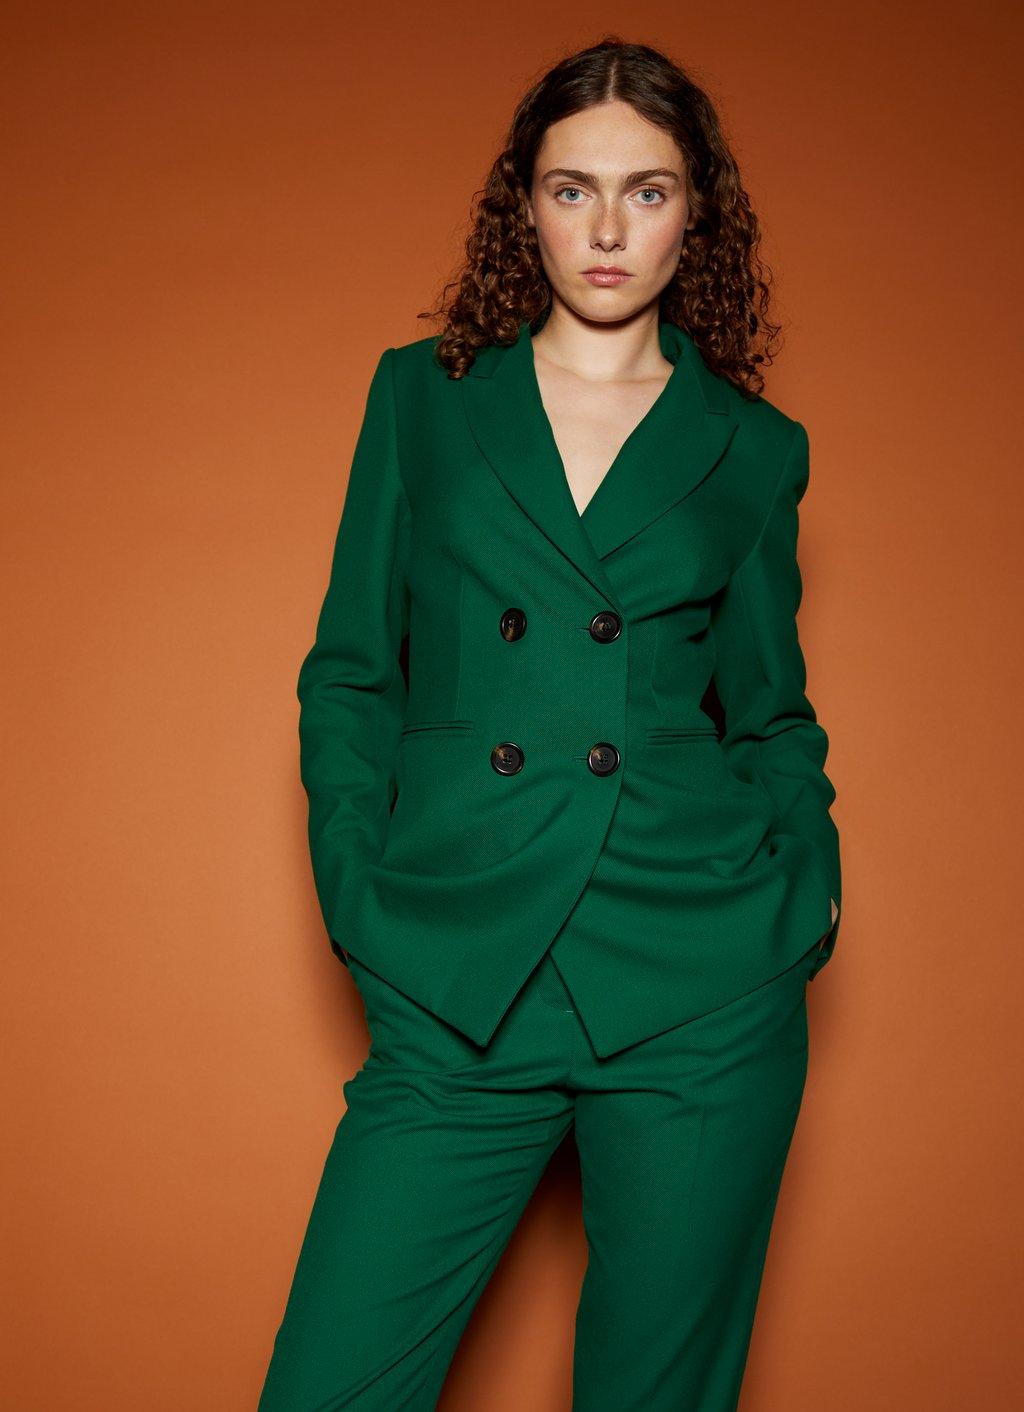 Women's Designer Jackets & Coats